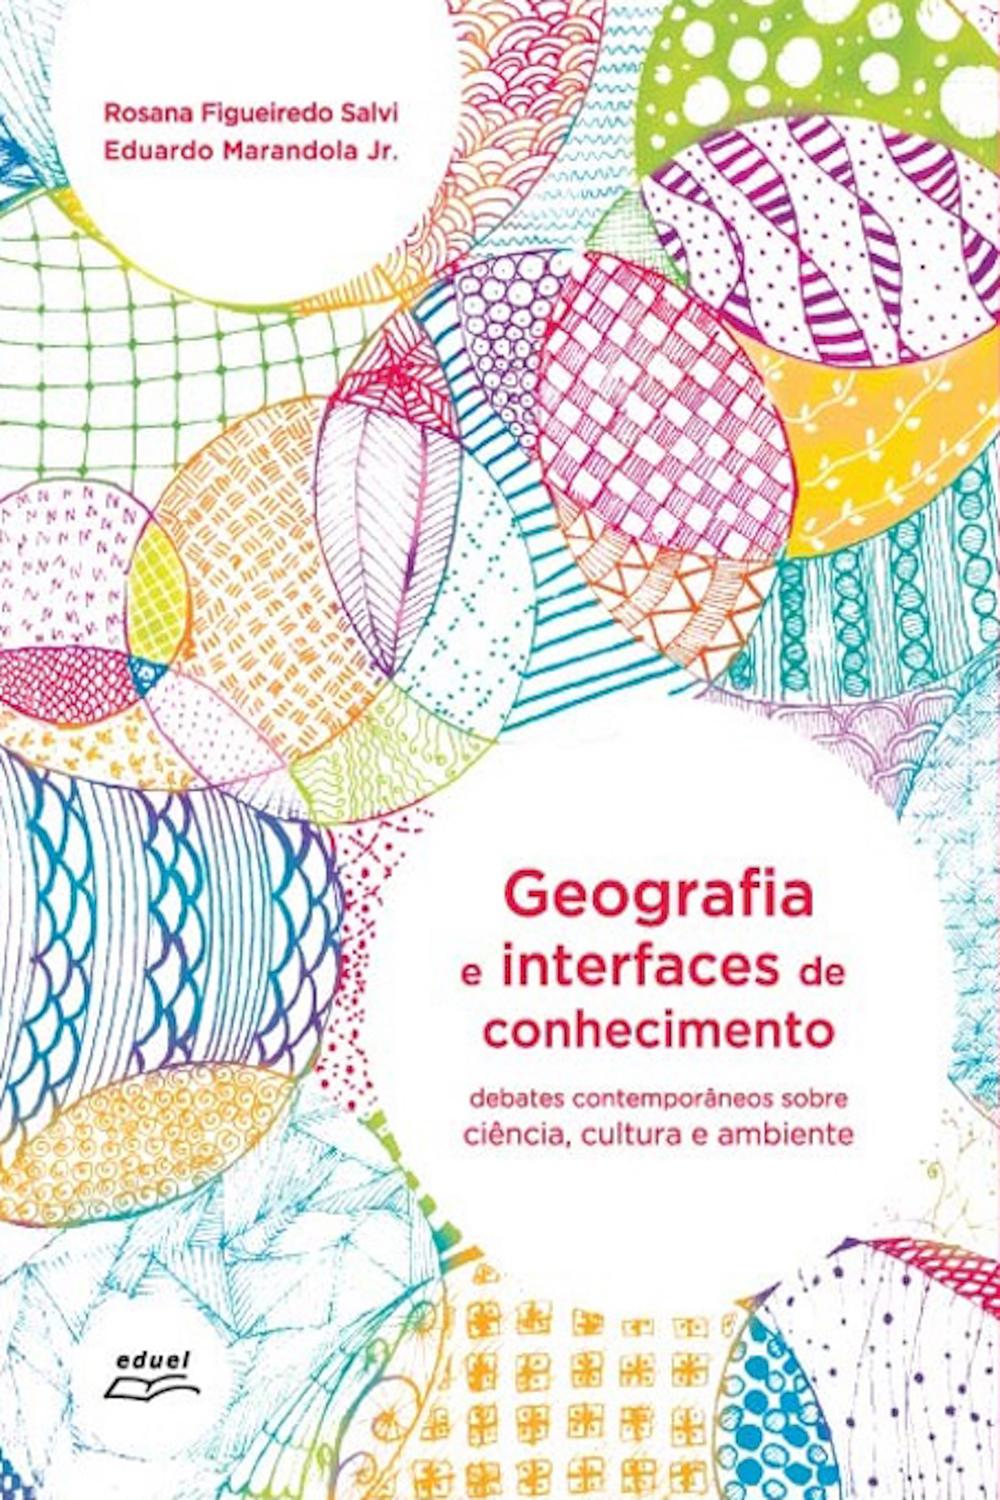 Geografia e interfaces de conhecimento - Rosana Figueiredo Salvi, Eduardo Marandola Jr.